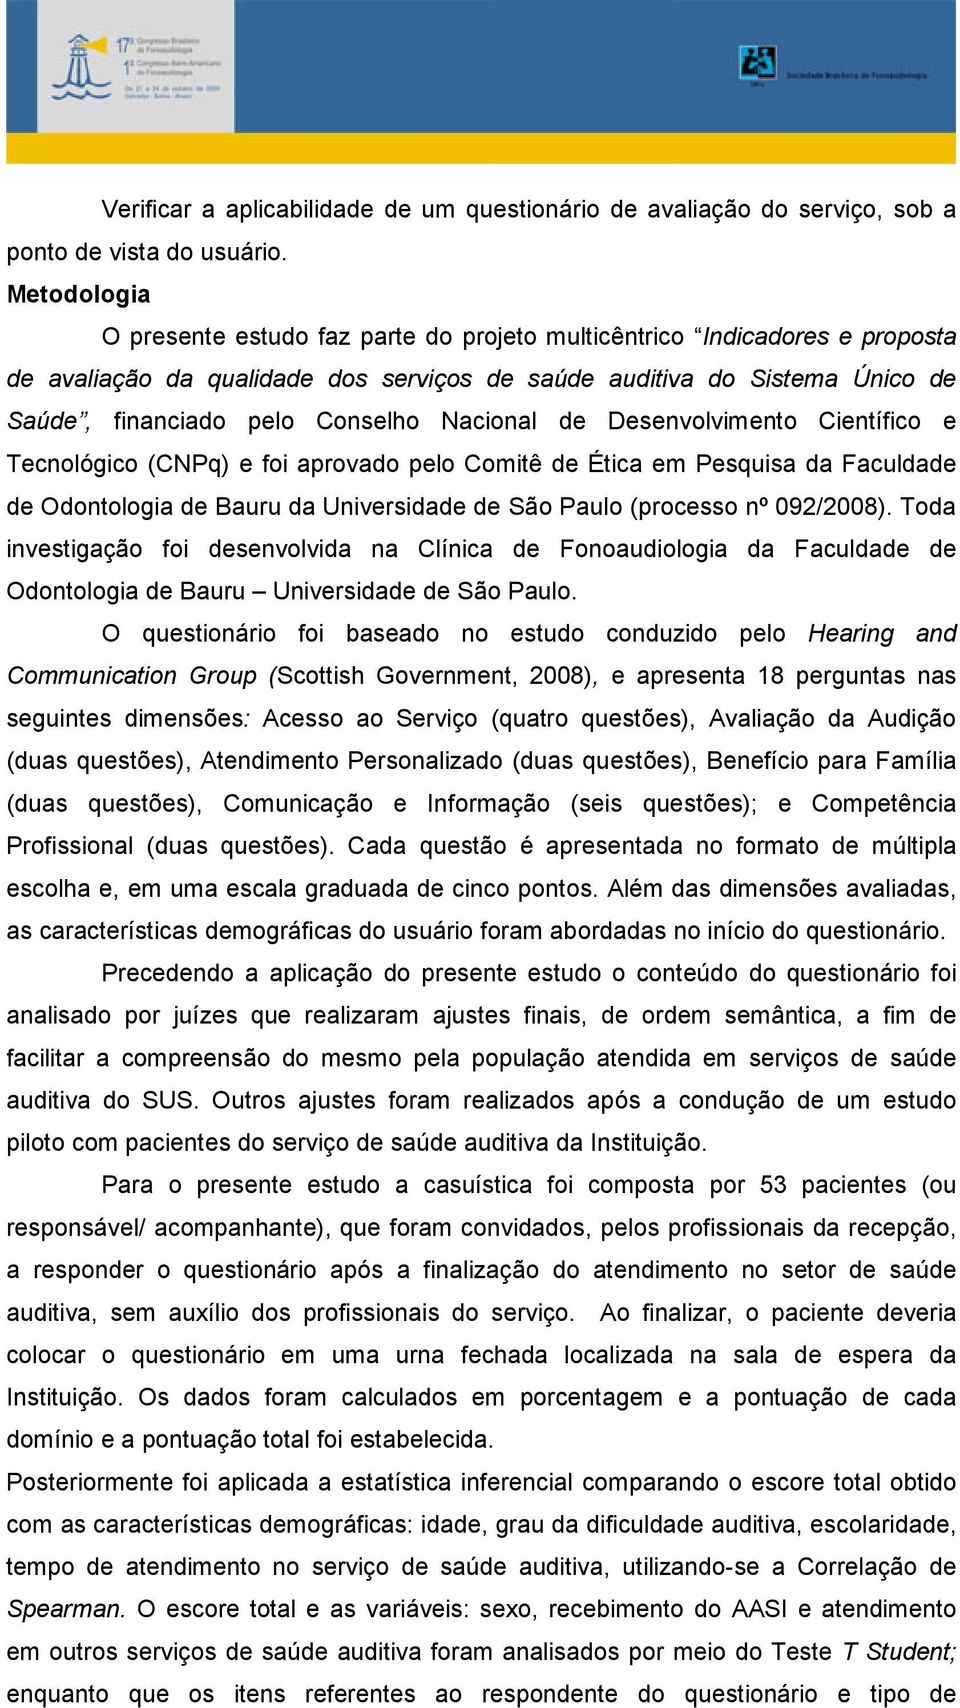 Nacional de Desenvolvimento Científico e Tecnológico (CNPq) e foi aprovado pelo Comitê de Ética em Pesquisa da Faculdade de Odontologia de Bauru da Universidade de São Paulo (processo nº 092/2008).